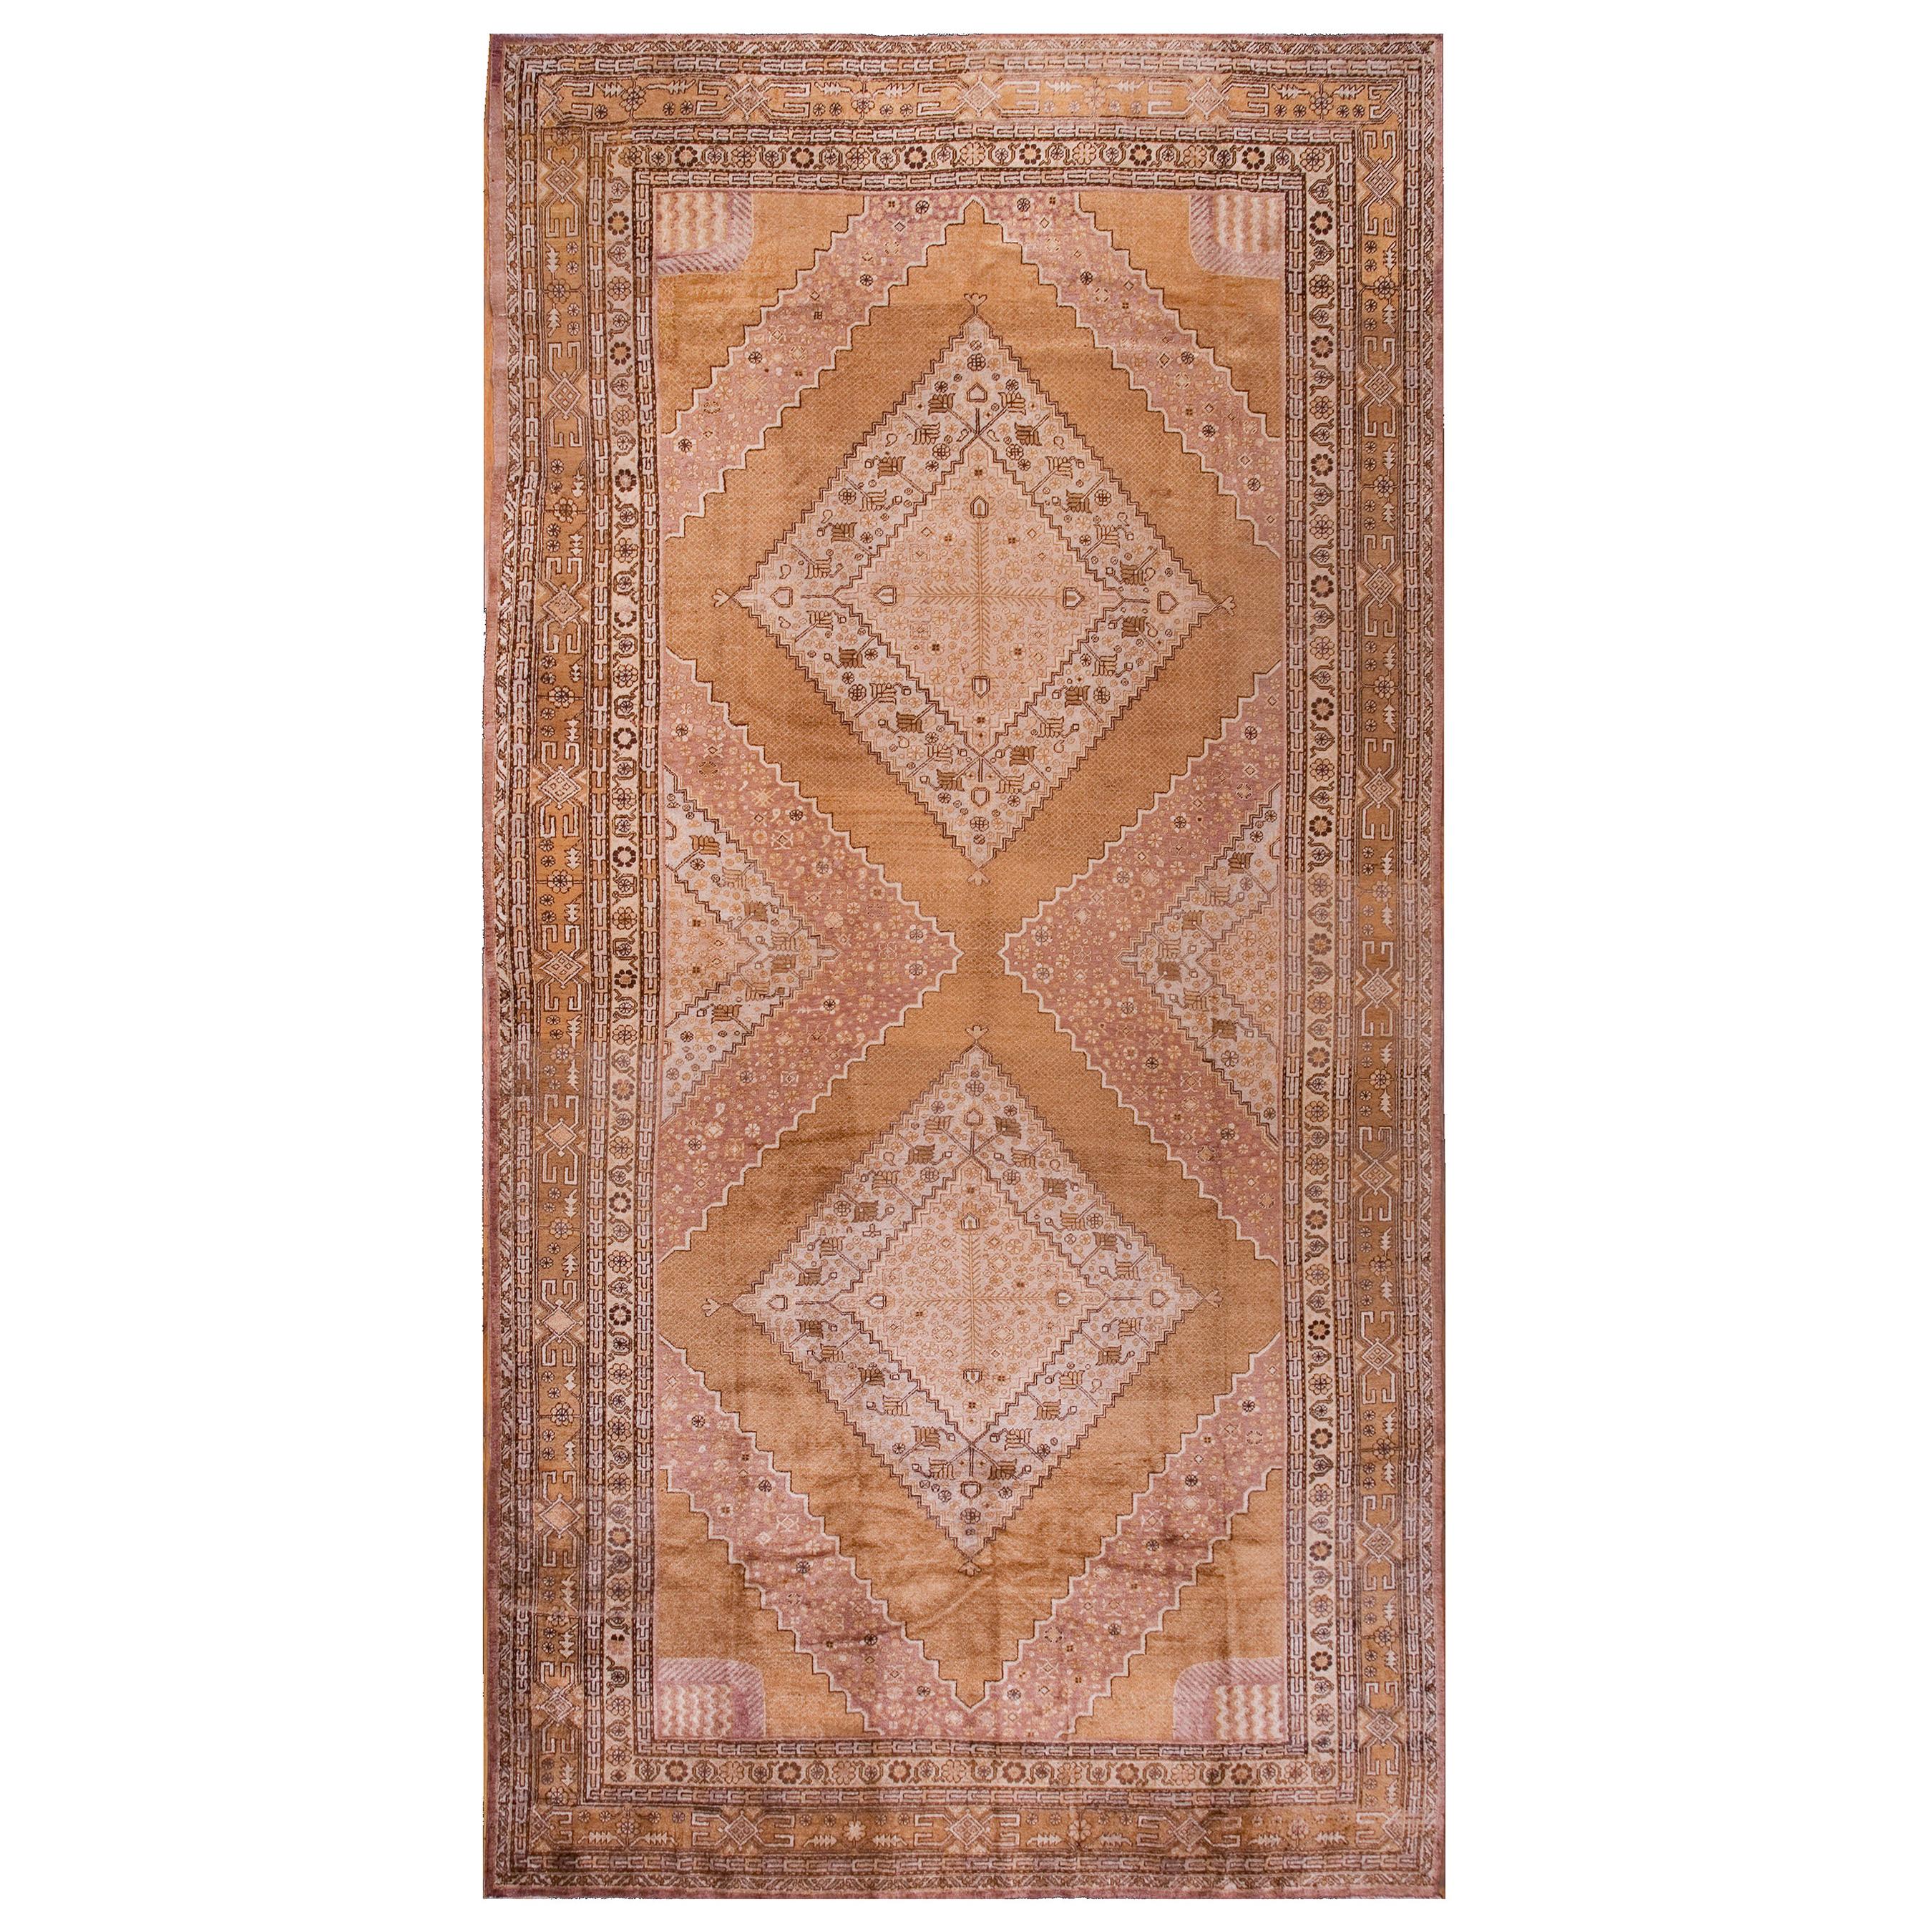 1930's Central Asian Khotan Carpet ( 9'2" x 18'2" - 279 x 553 ) For Sale